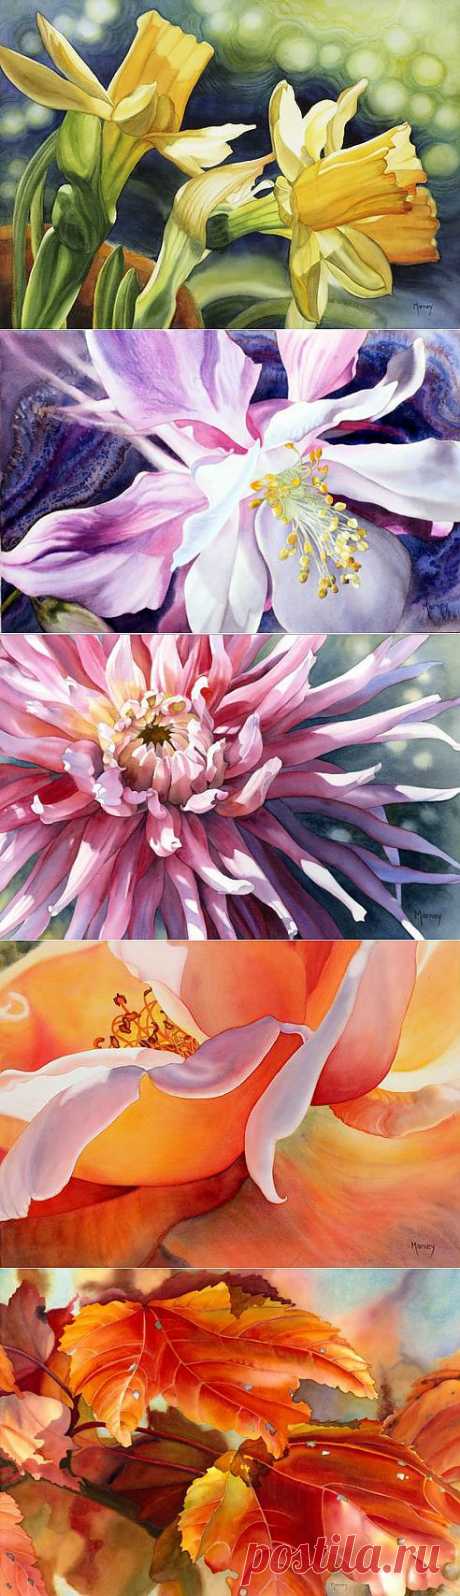 Канадская художница Marney Ward. Картины цветов акварелью | Usenkomaxim.ru